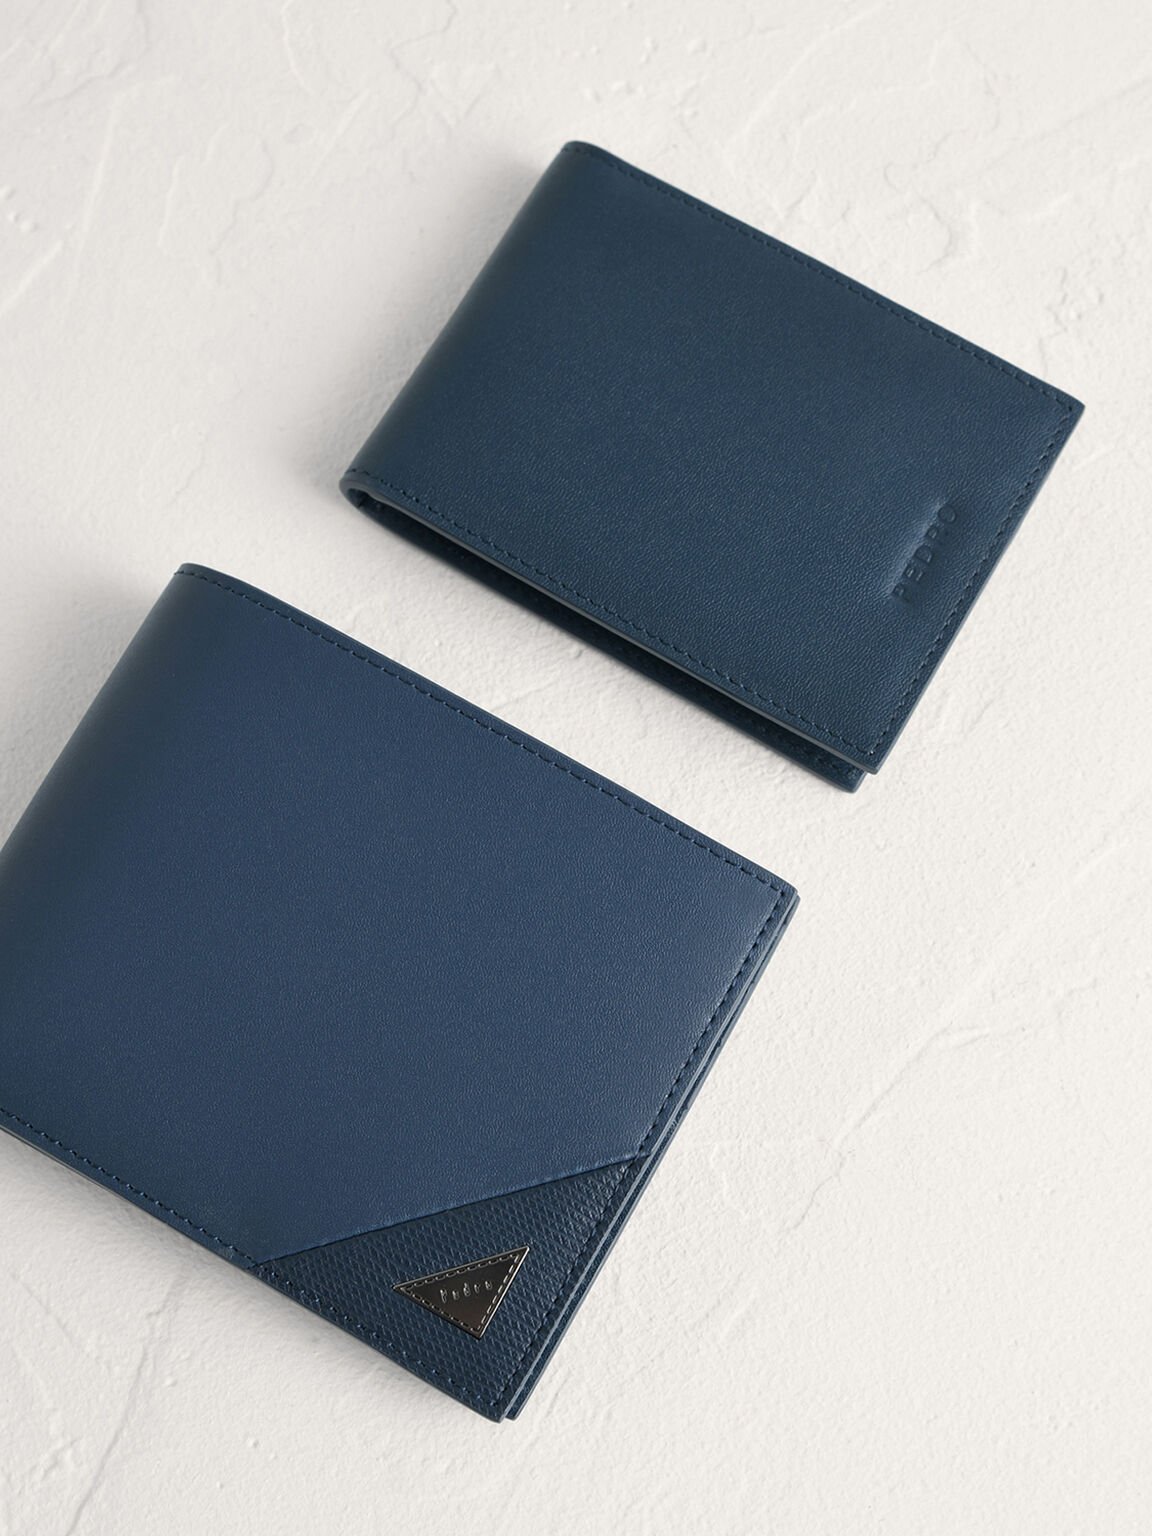 皮革雙折疊錢包帶內袋, 海军蓝色, hi-res